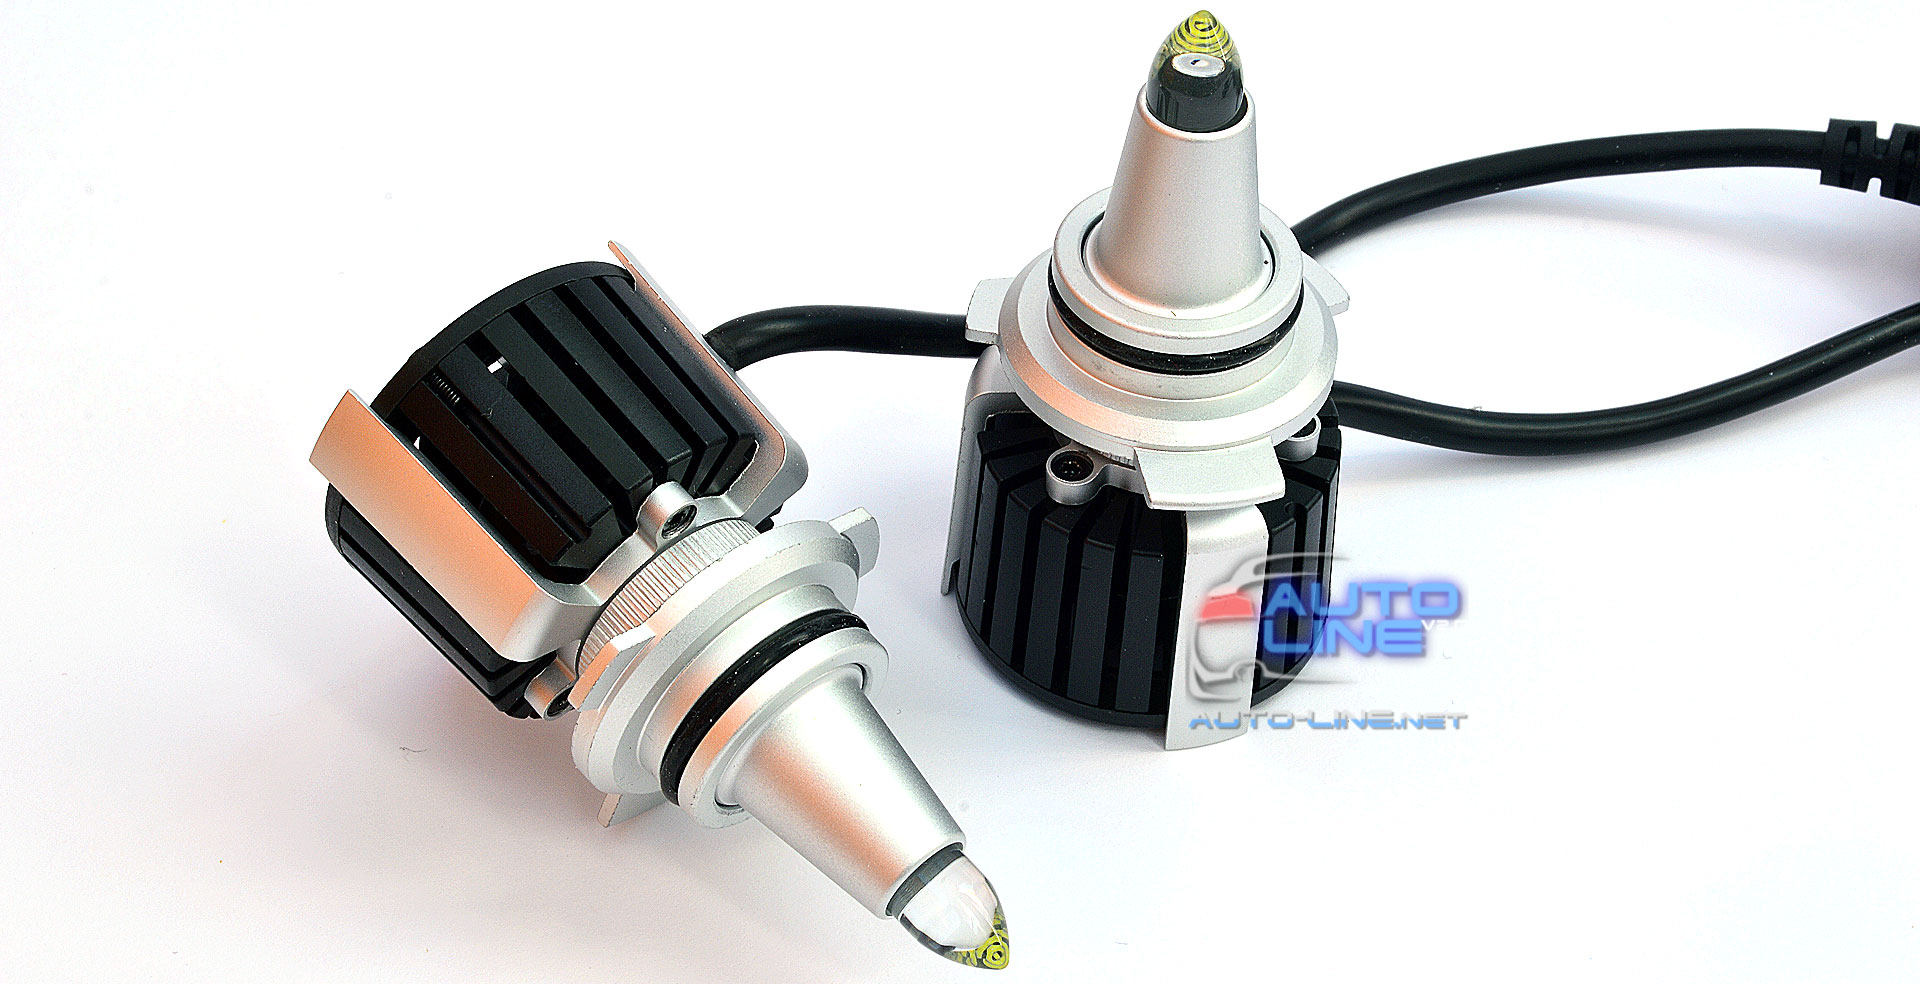 B-Power SL LED R10 9012 (HIR2) CAN 6000K 25000Lm 120W — мощные 3D лазерные лампы 9012 (HIR2) для линзованной оптики, с углом свечения 360 градусов, 6000K